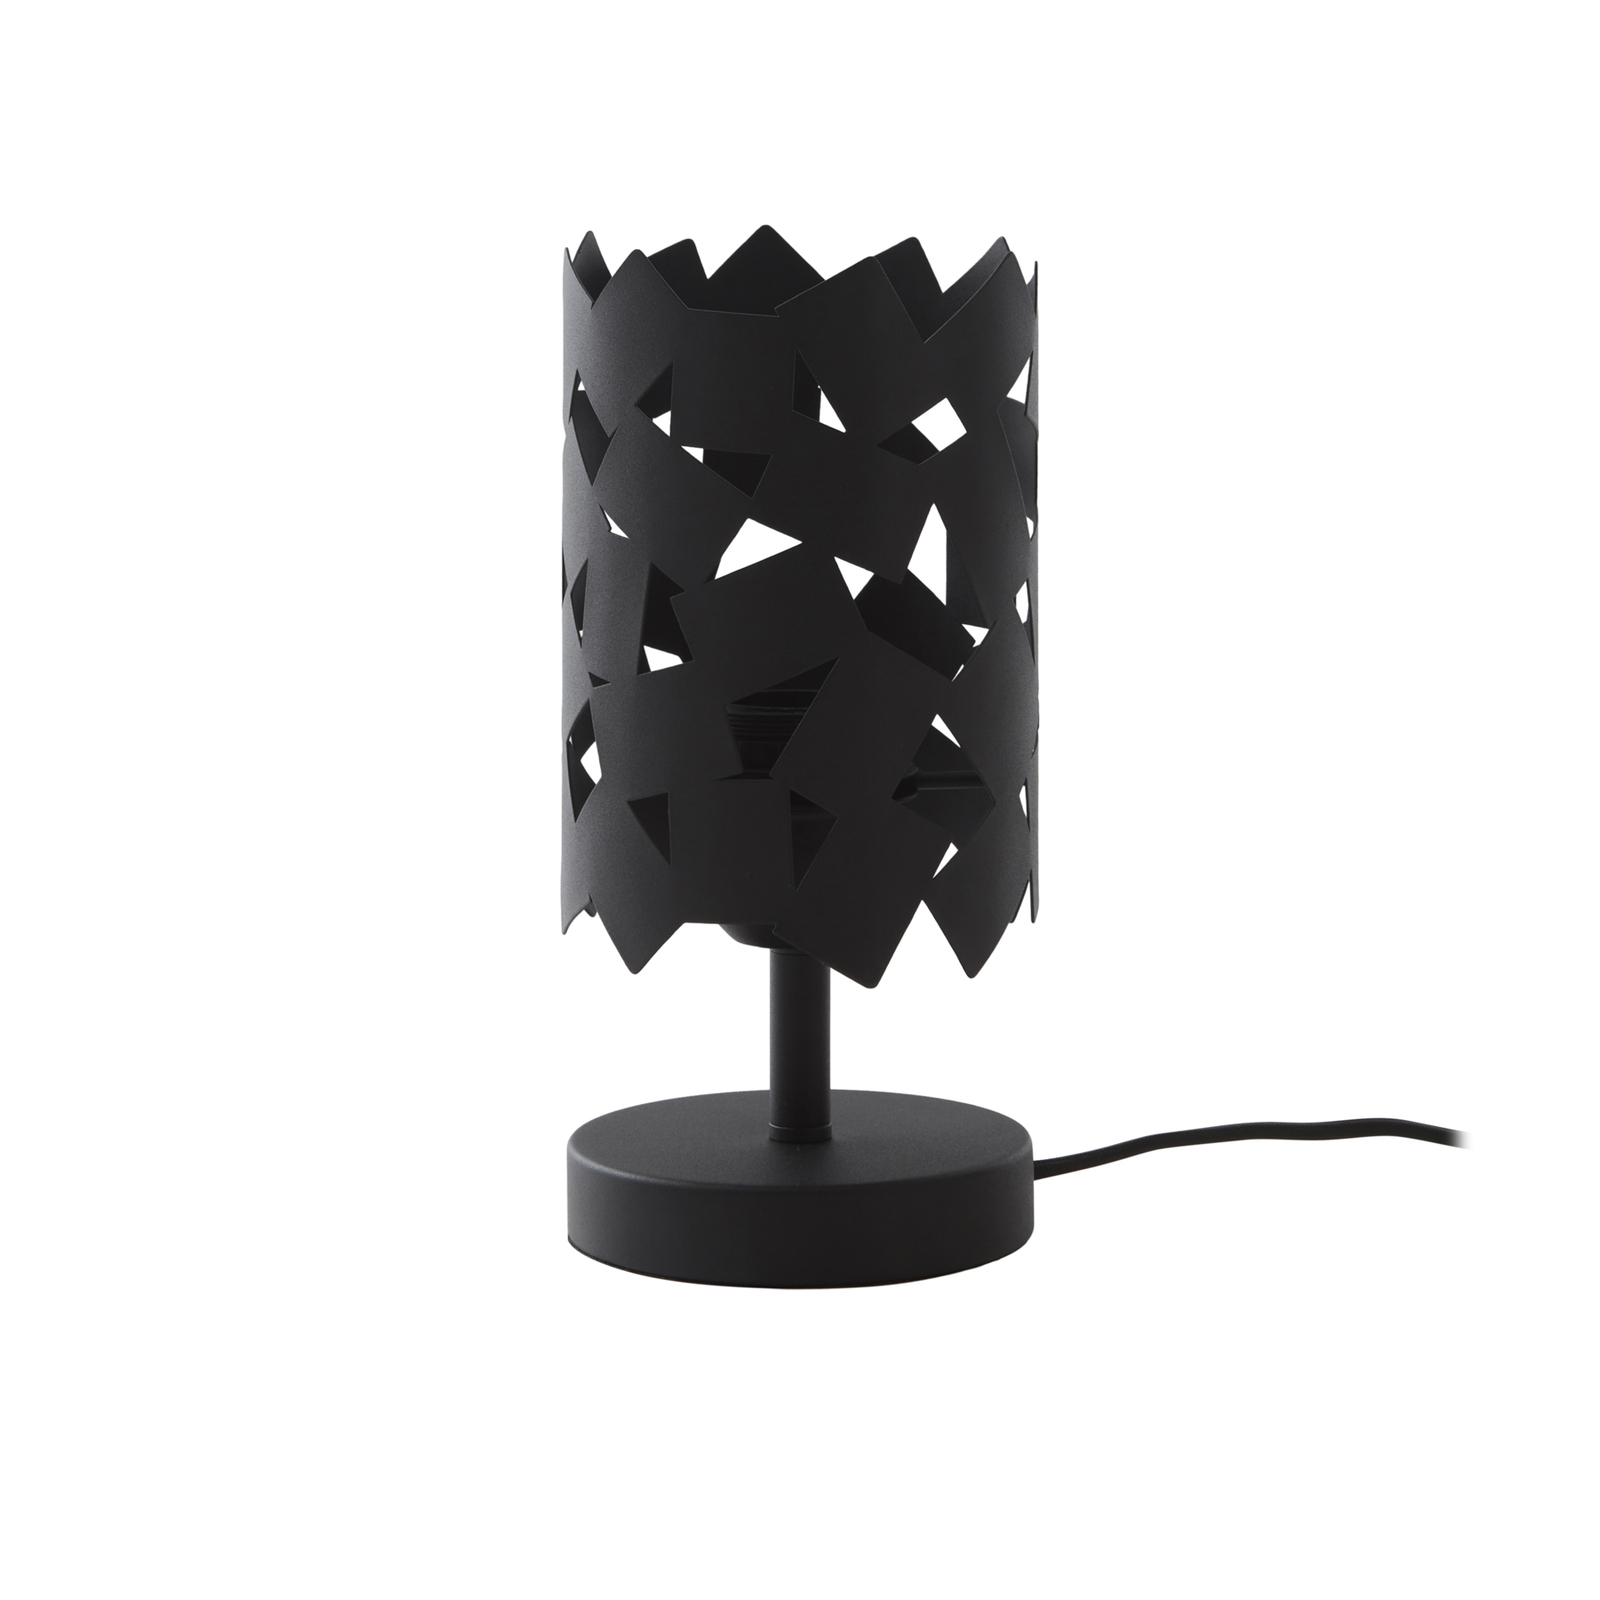 Stolná lampa Lucande Aeloria, čierna, železo, Ø 12 cm, E27